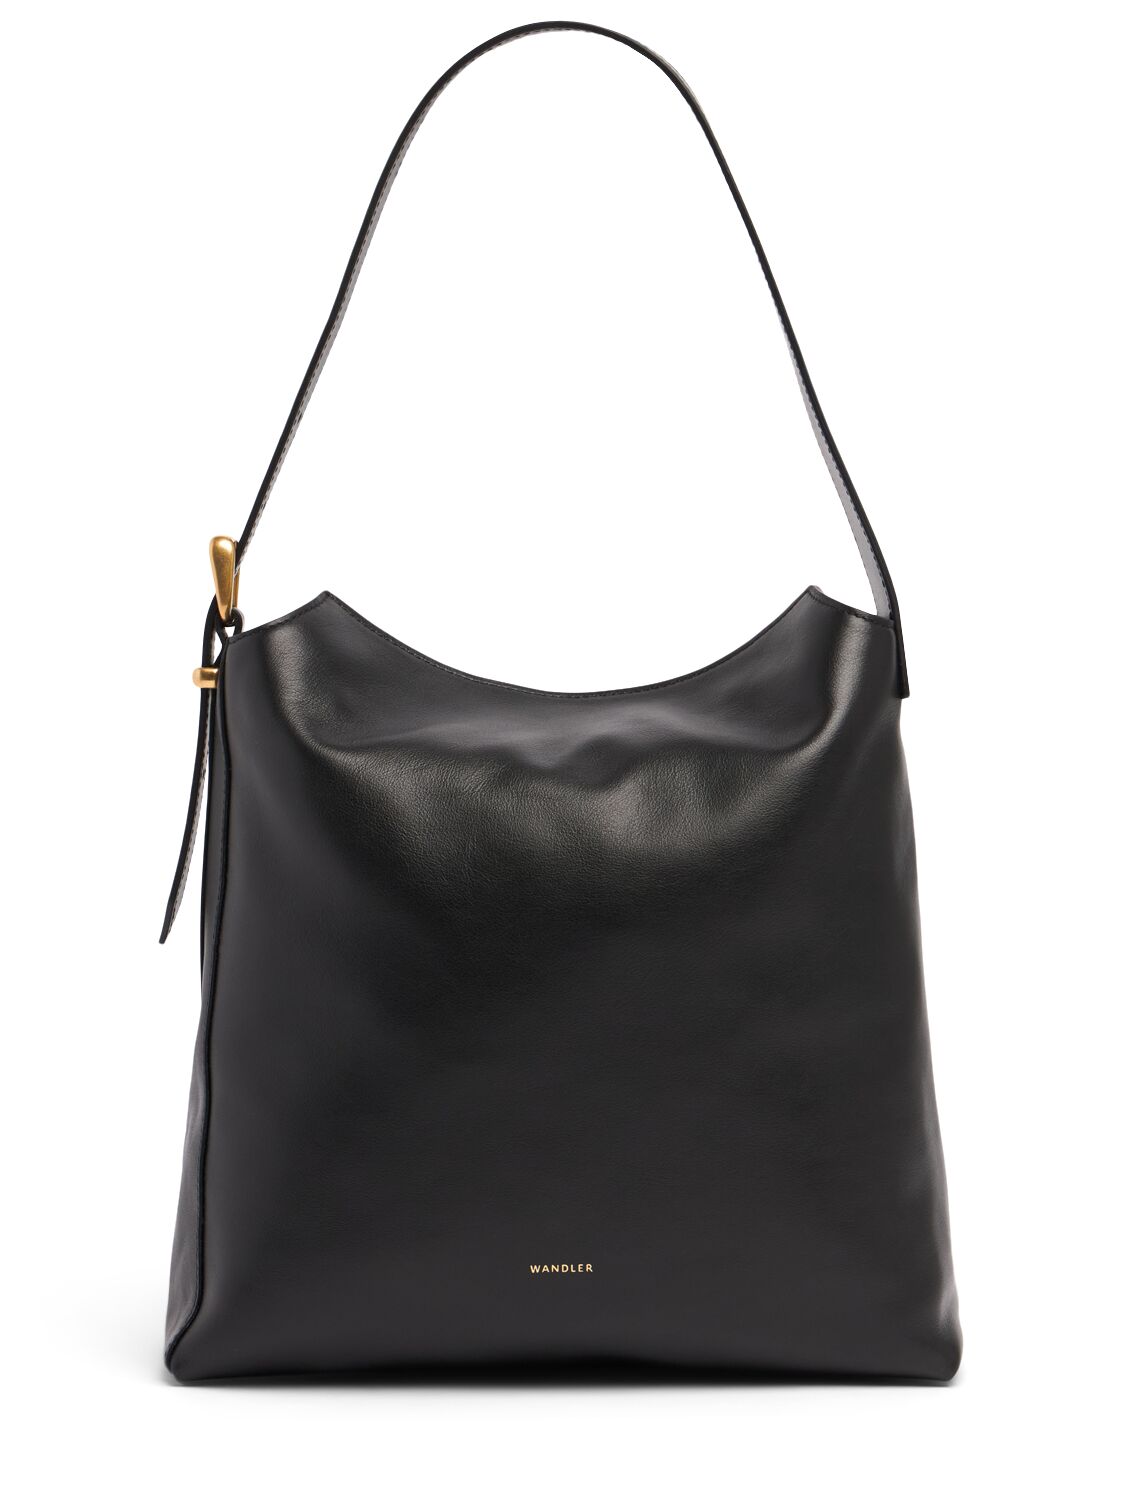 Marli Leather Shoulder Bag